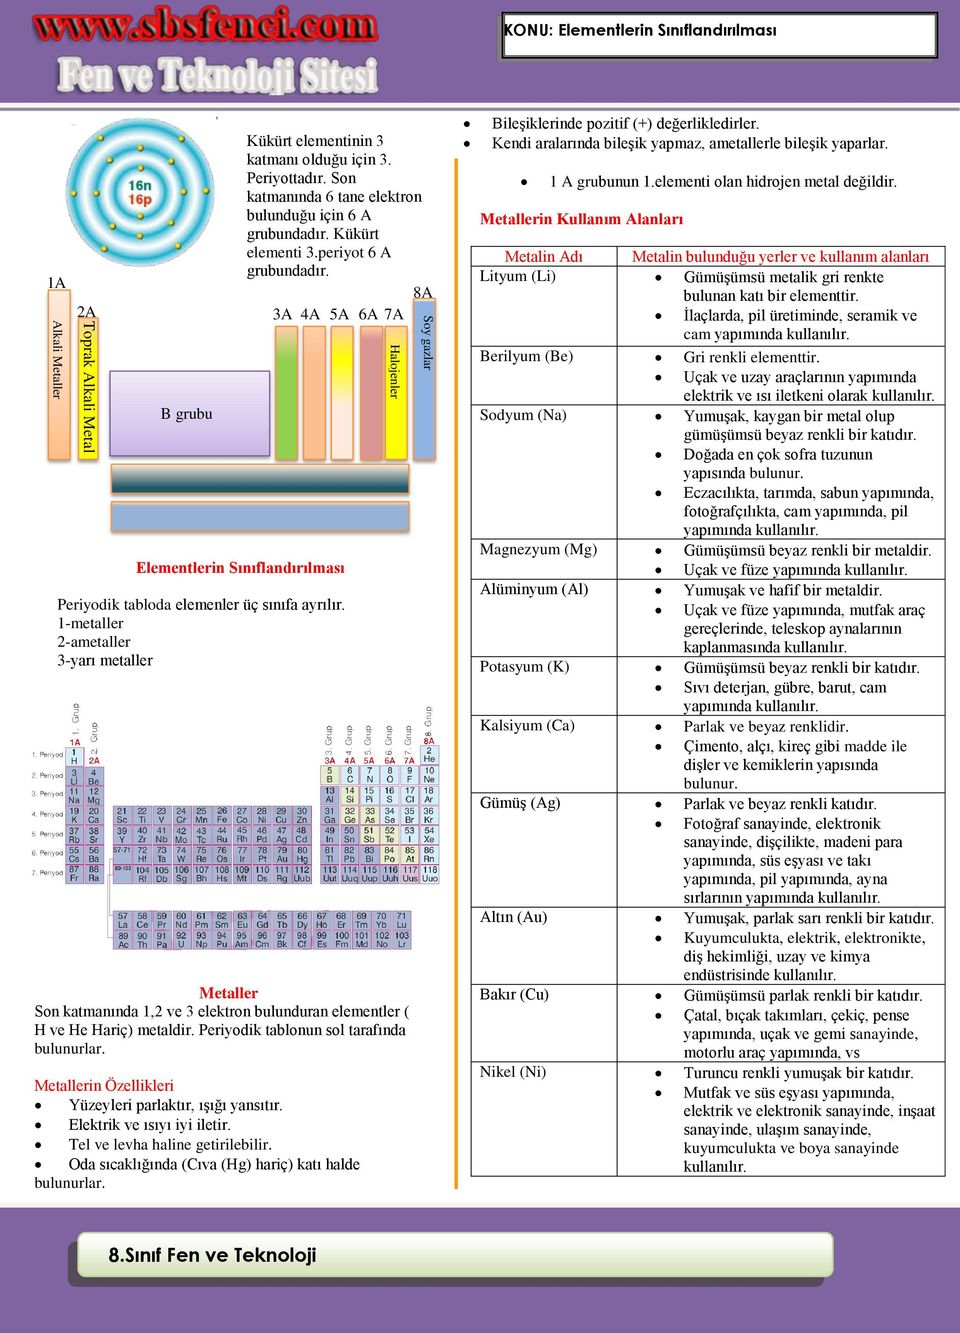 8.Sınıf Fen ve Teknoloji. KONU: Elementlerin Sınıflandırılması - PDF  Ücretsiz indirin